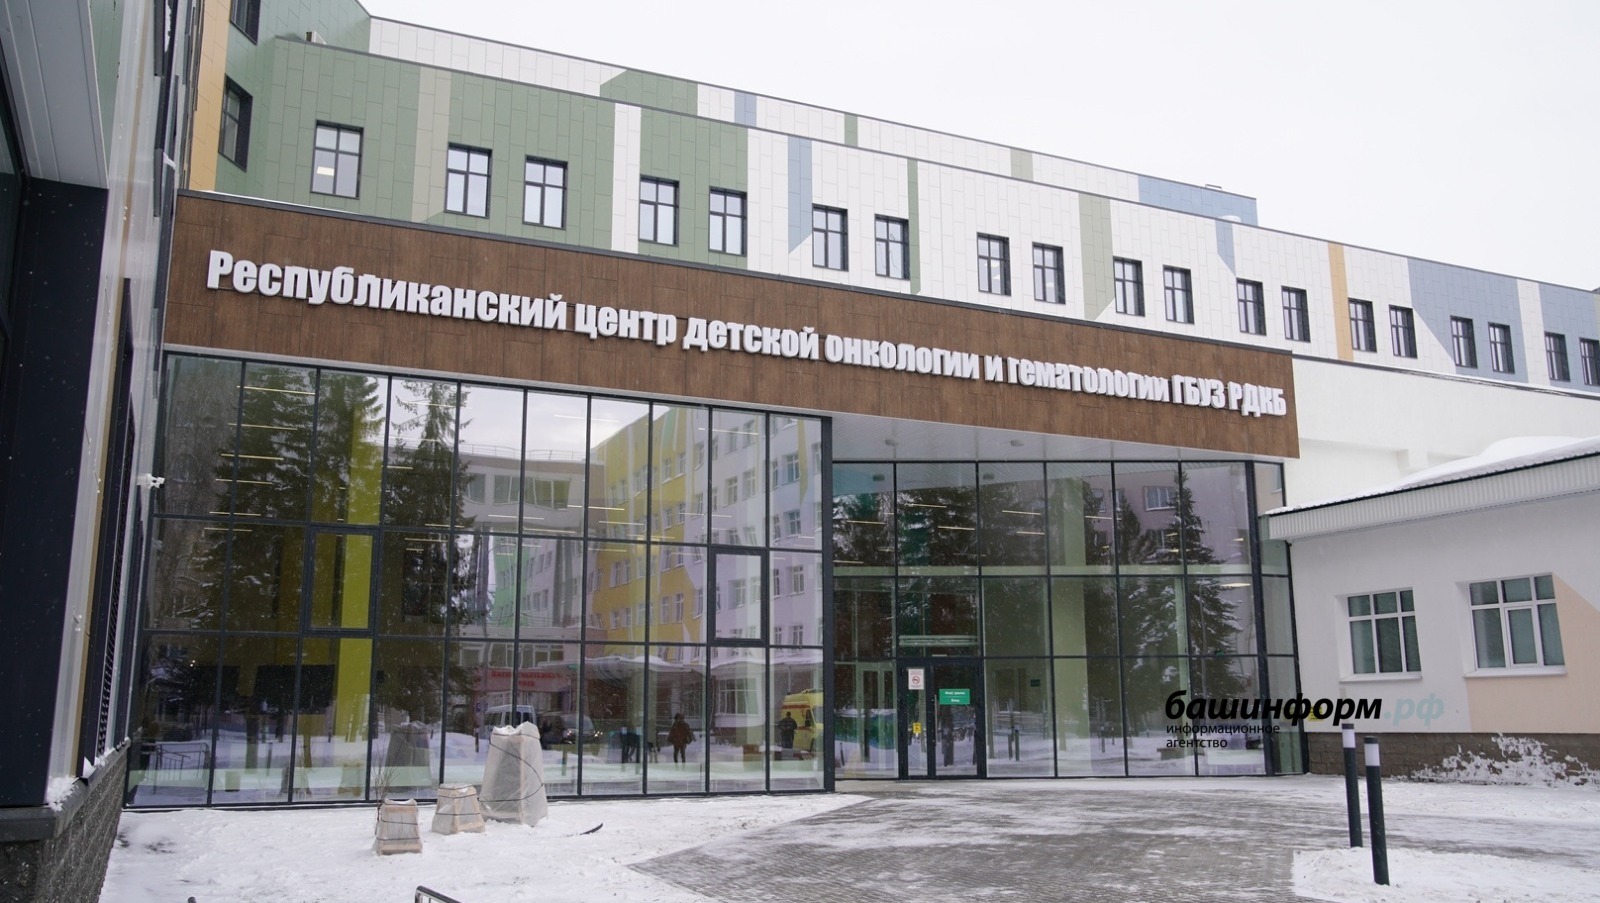 Известные врачи поделились комментариями по открытию детского онкоцентра в столице Башкирии